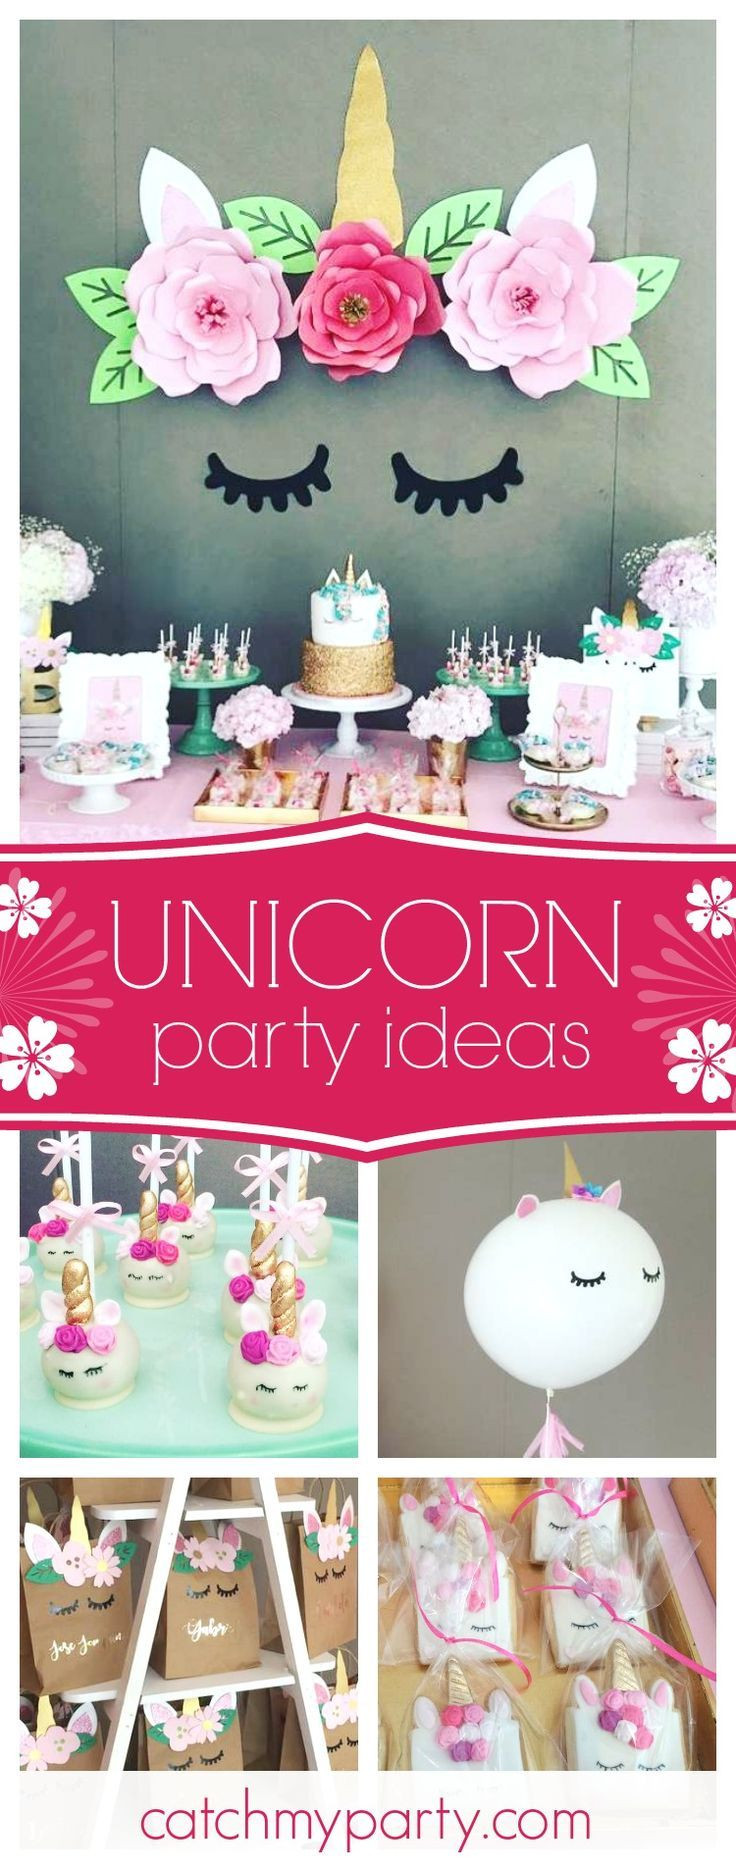 Unicorn Themed Party Ideas
 Best 25 Unicorn birthday parties ideas on Pinterest